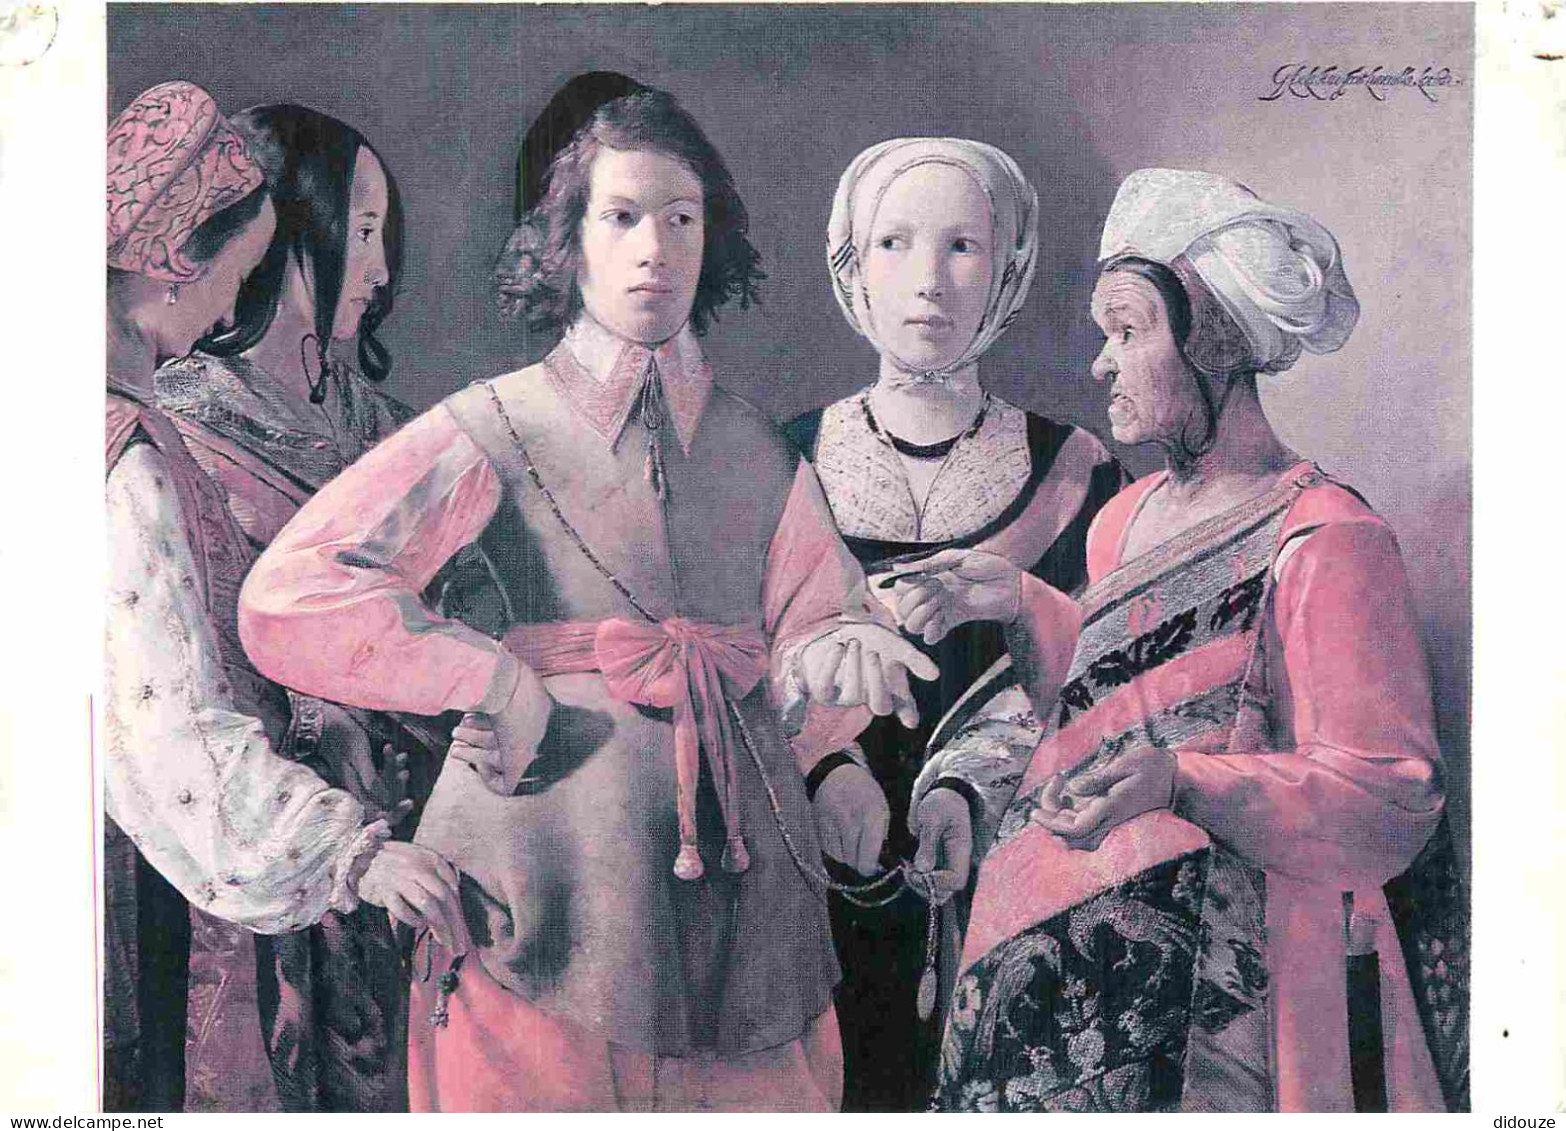 Art - Peinture - Georges De La Tour - La Diseuse De Bonne Aventure - New-York Metropolitan Museum - CPM - Voir Scans Rec - Pintura & Cuadros